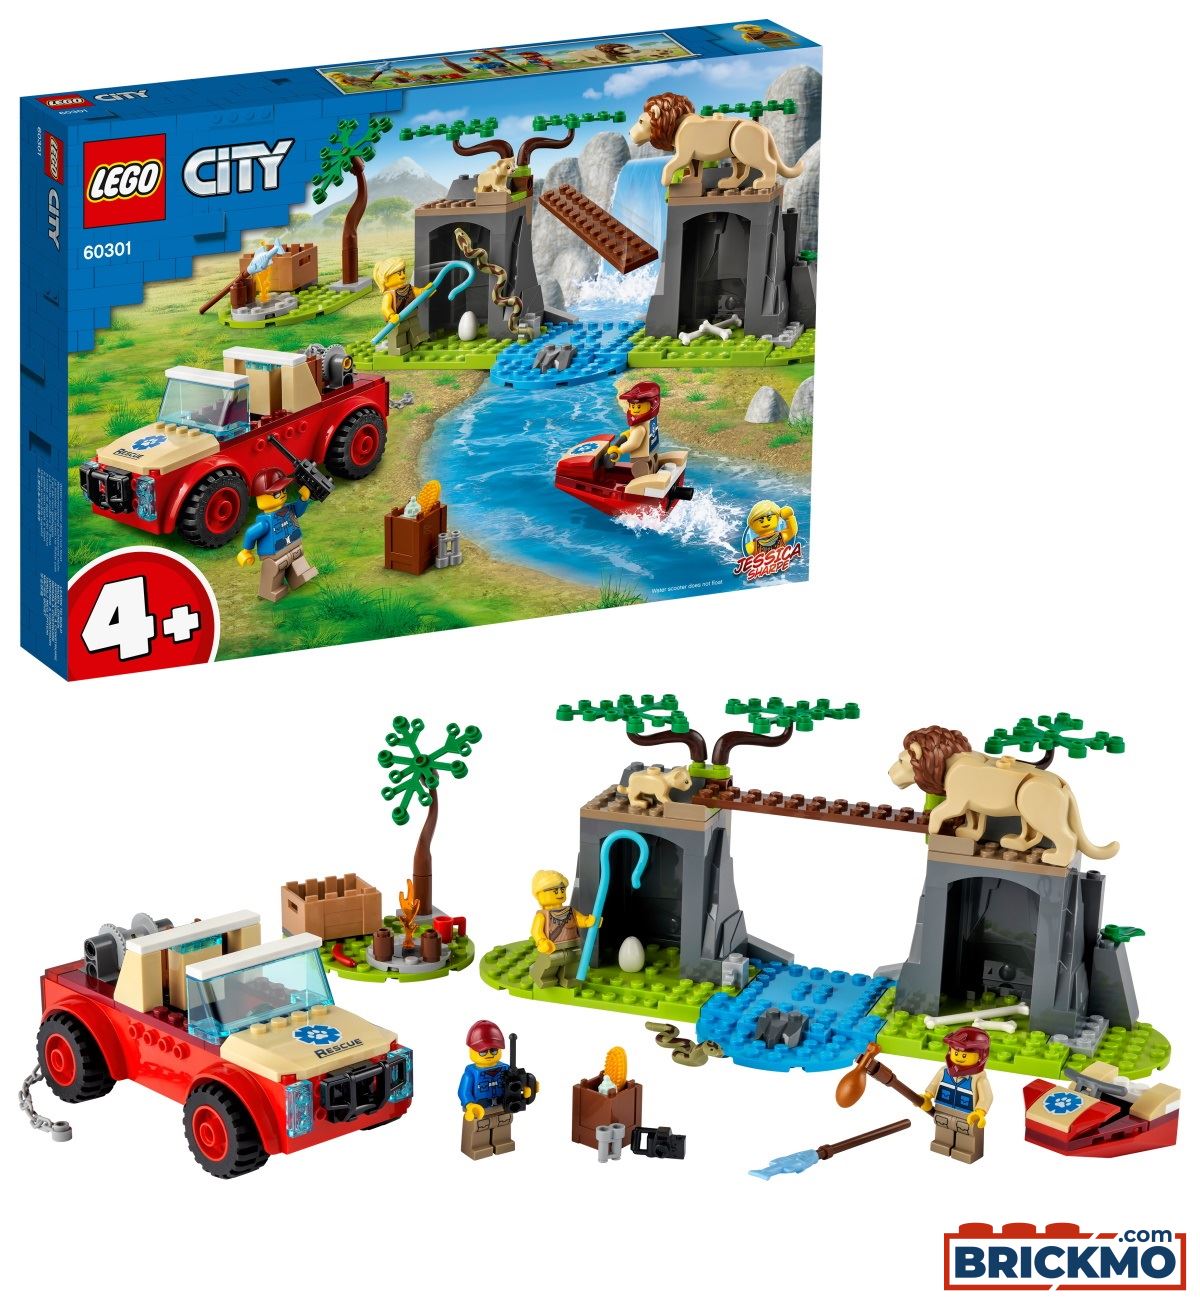 LEGO City 60301 Tierrettungs-Geländewagen 60301 5702016911923 | eBay